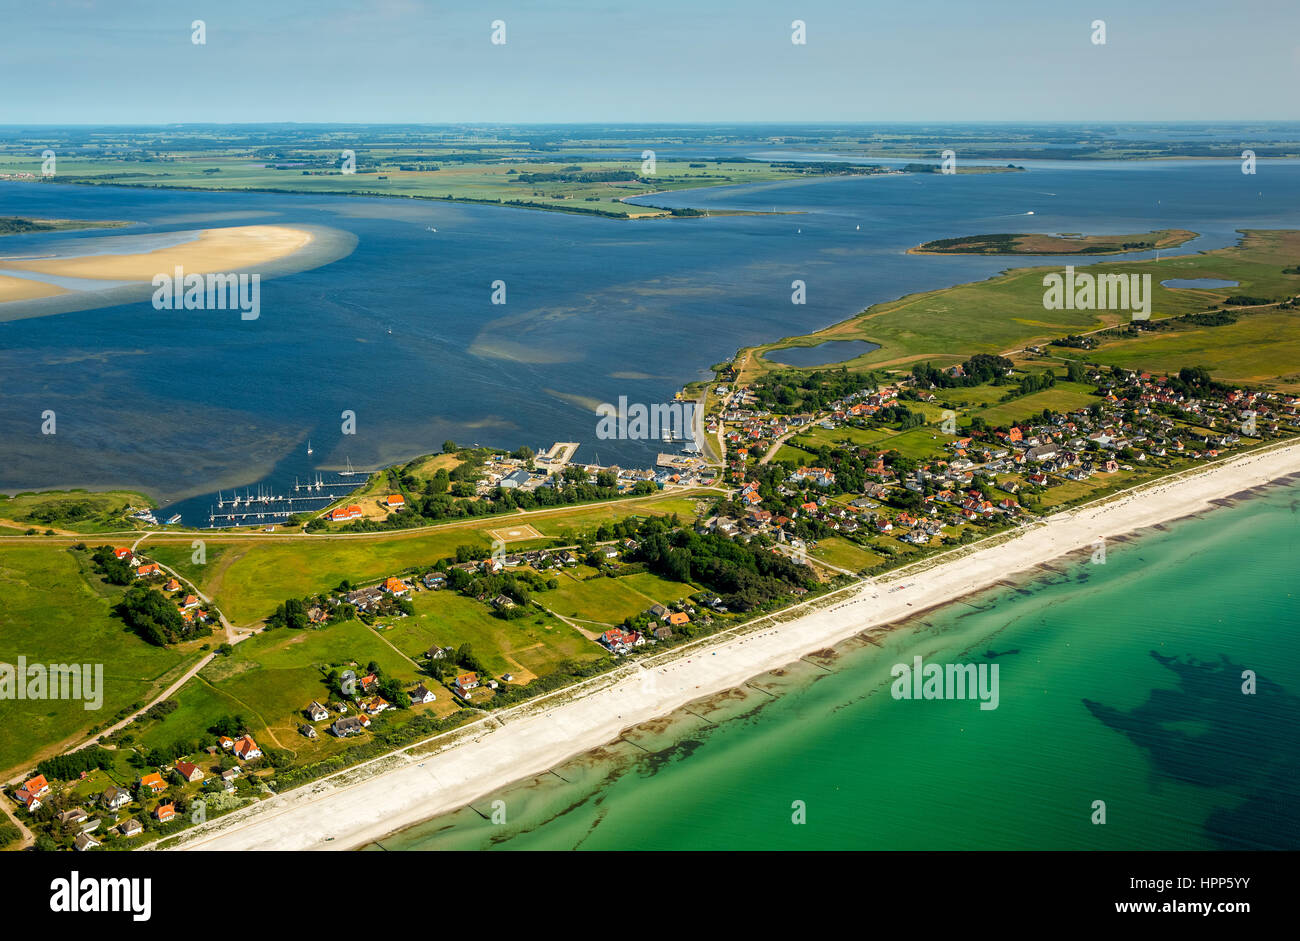 Spiaggia di sabbia, la baia e il porto di Vitte, isola di Hiddensee, costa baltica, Meclemburgo-Pomerania, Germania Foto Stock